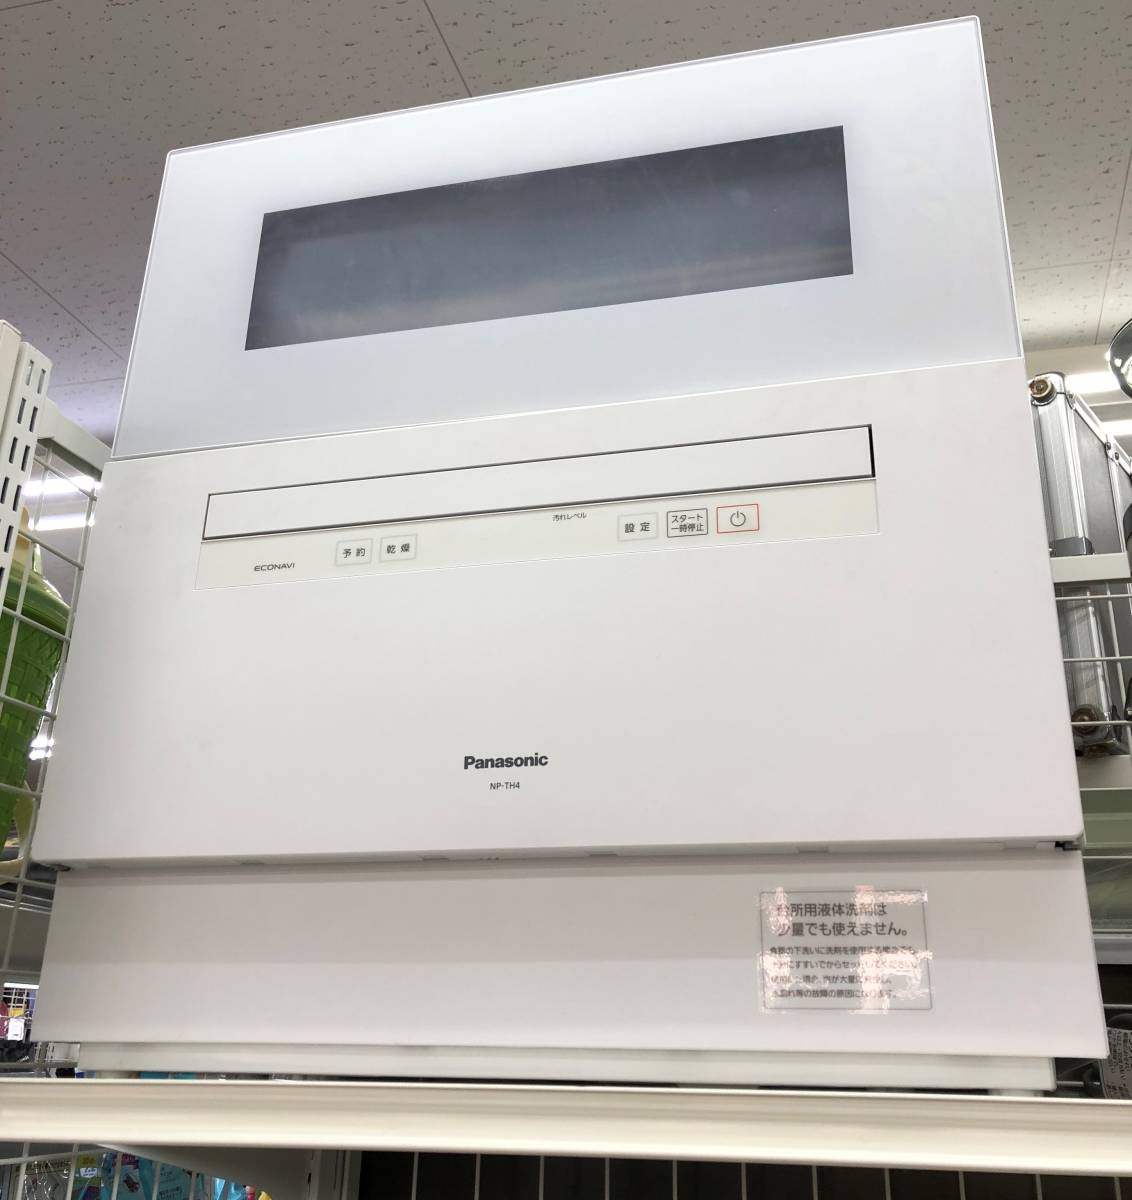 Panasonic 食器洗い乾燥機 NP-TH4-W ホワイト 食洗機 パナソニック SS-139140